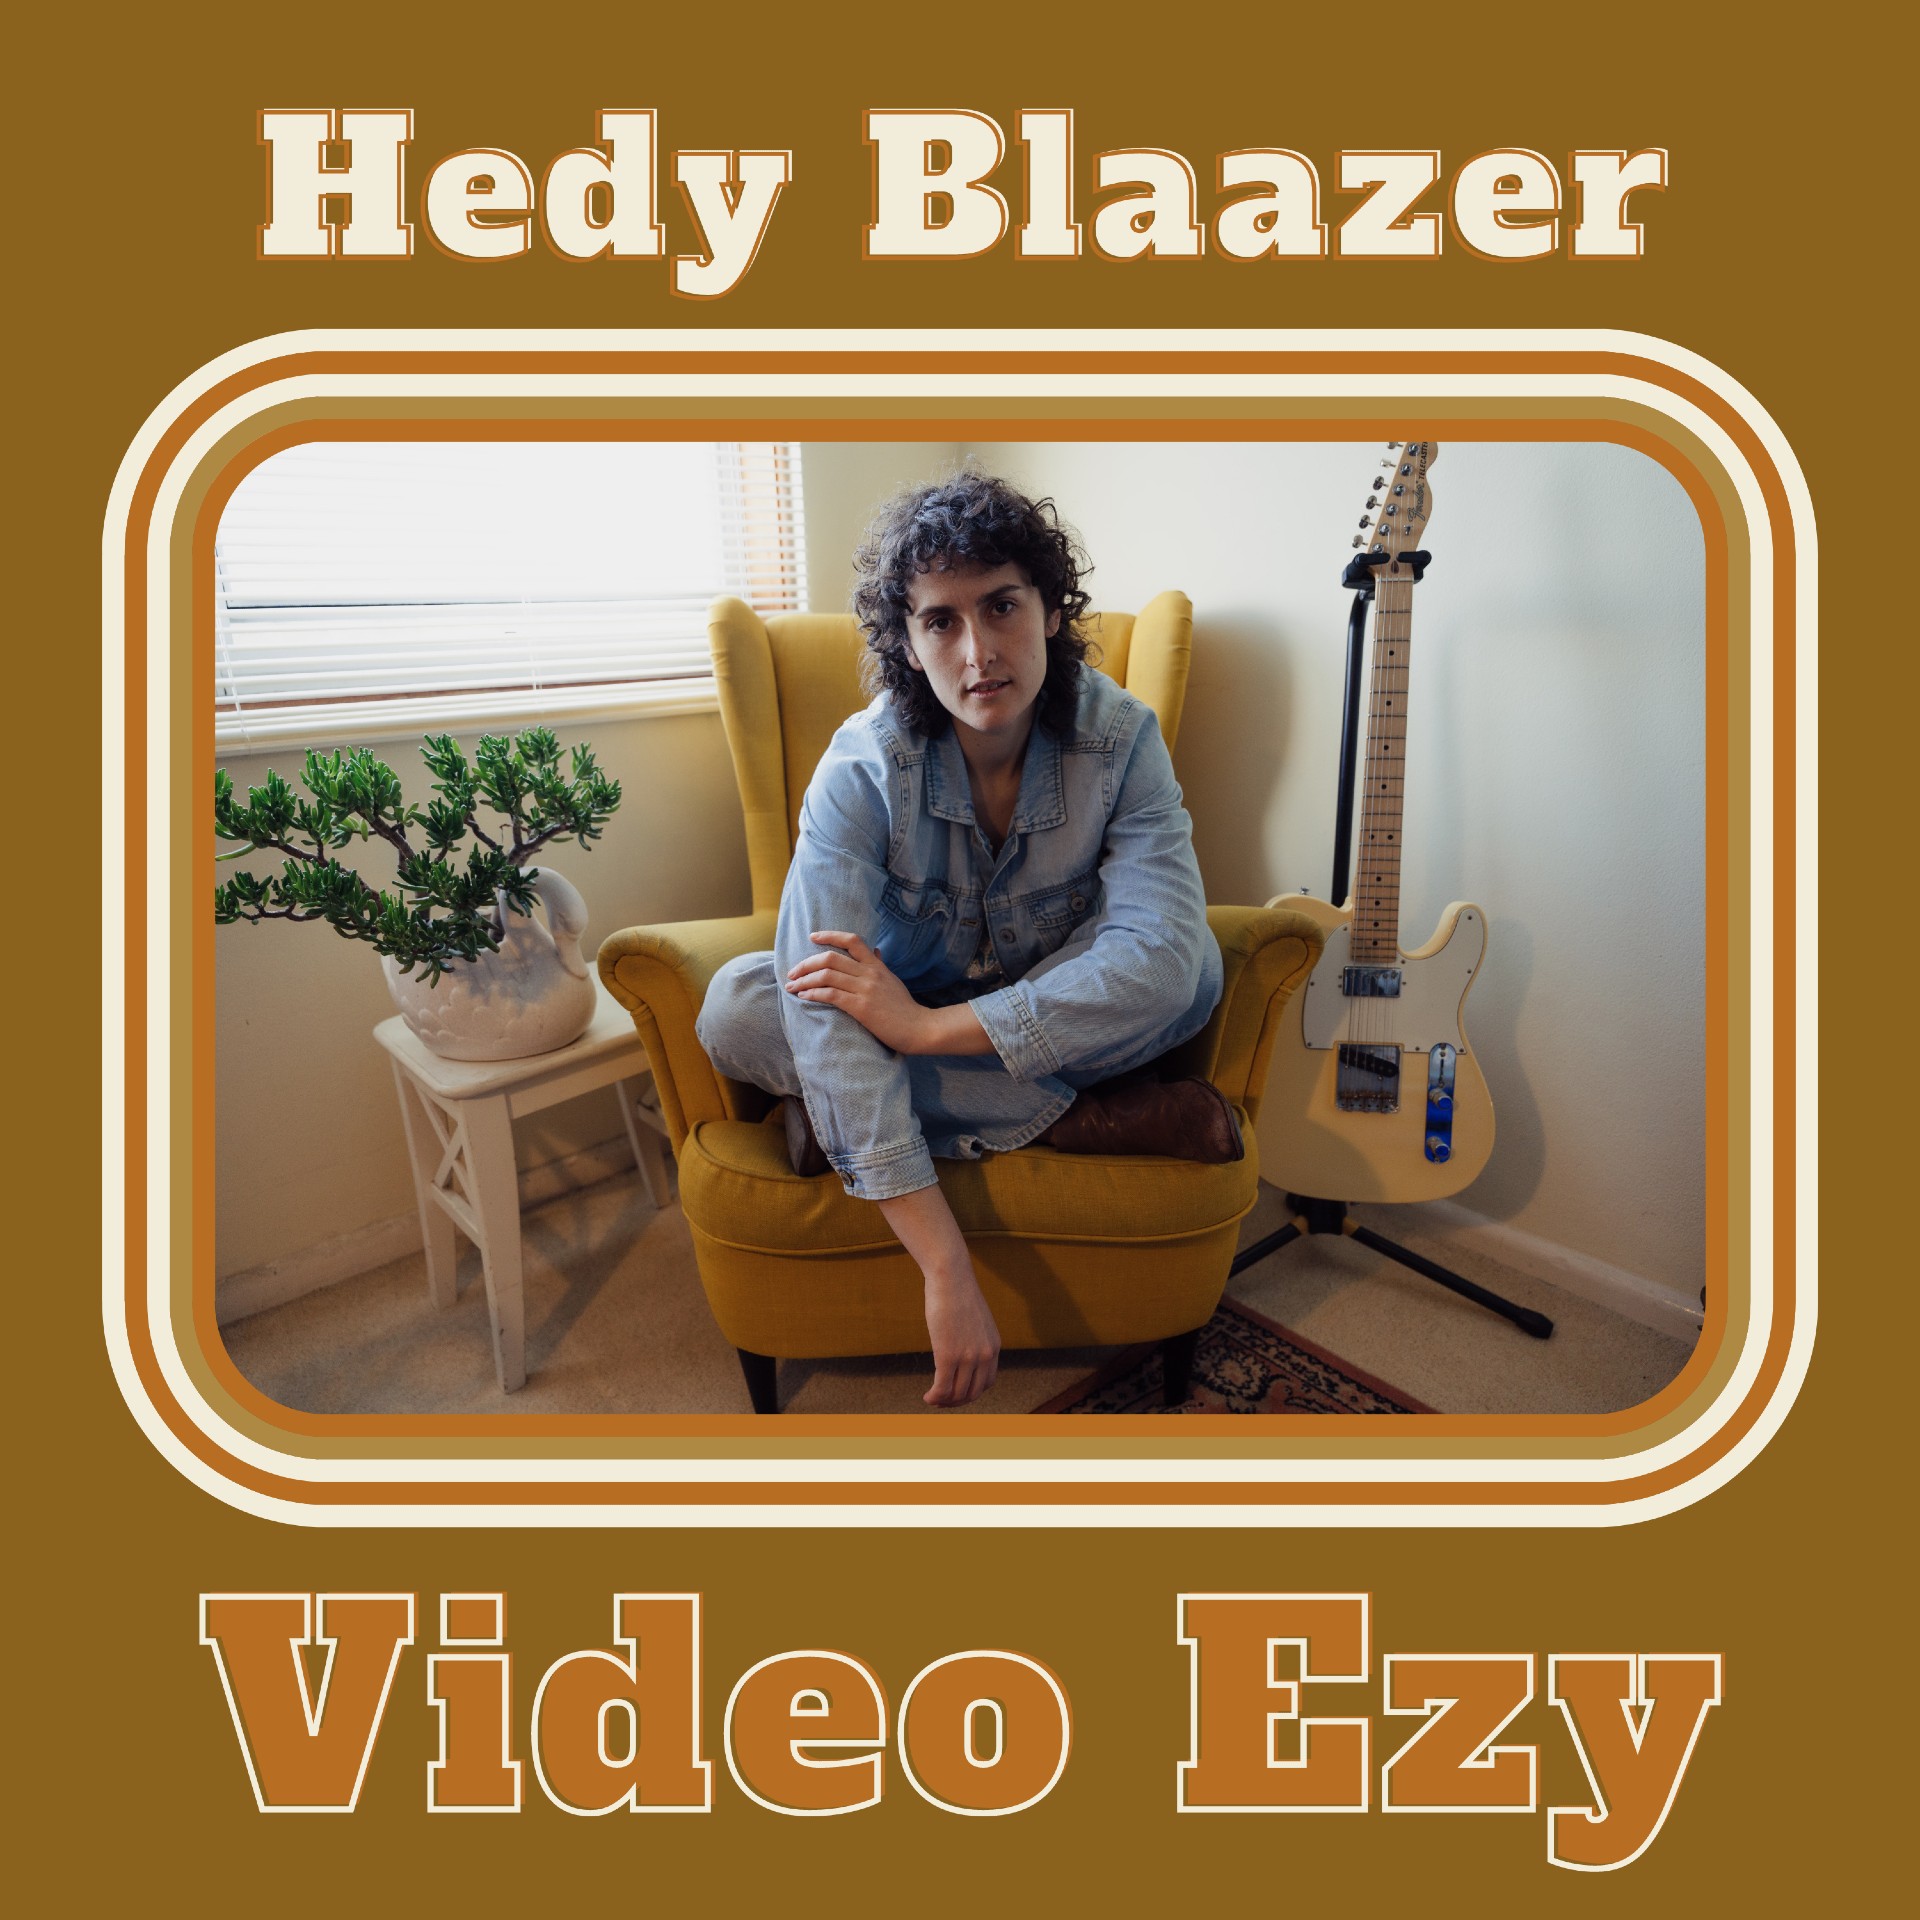 Hedy Blaazer “Video Ezy” single artwork